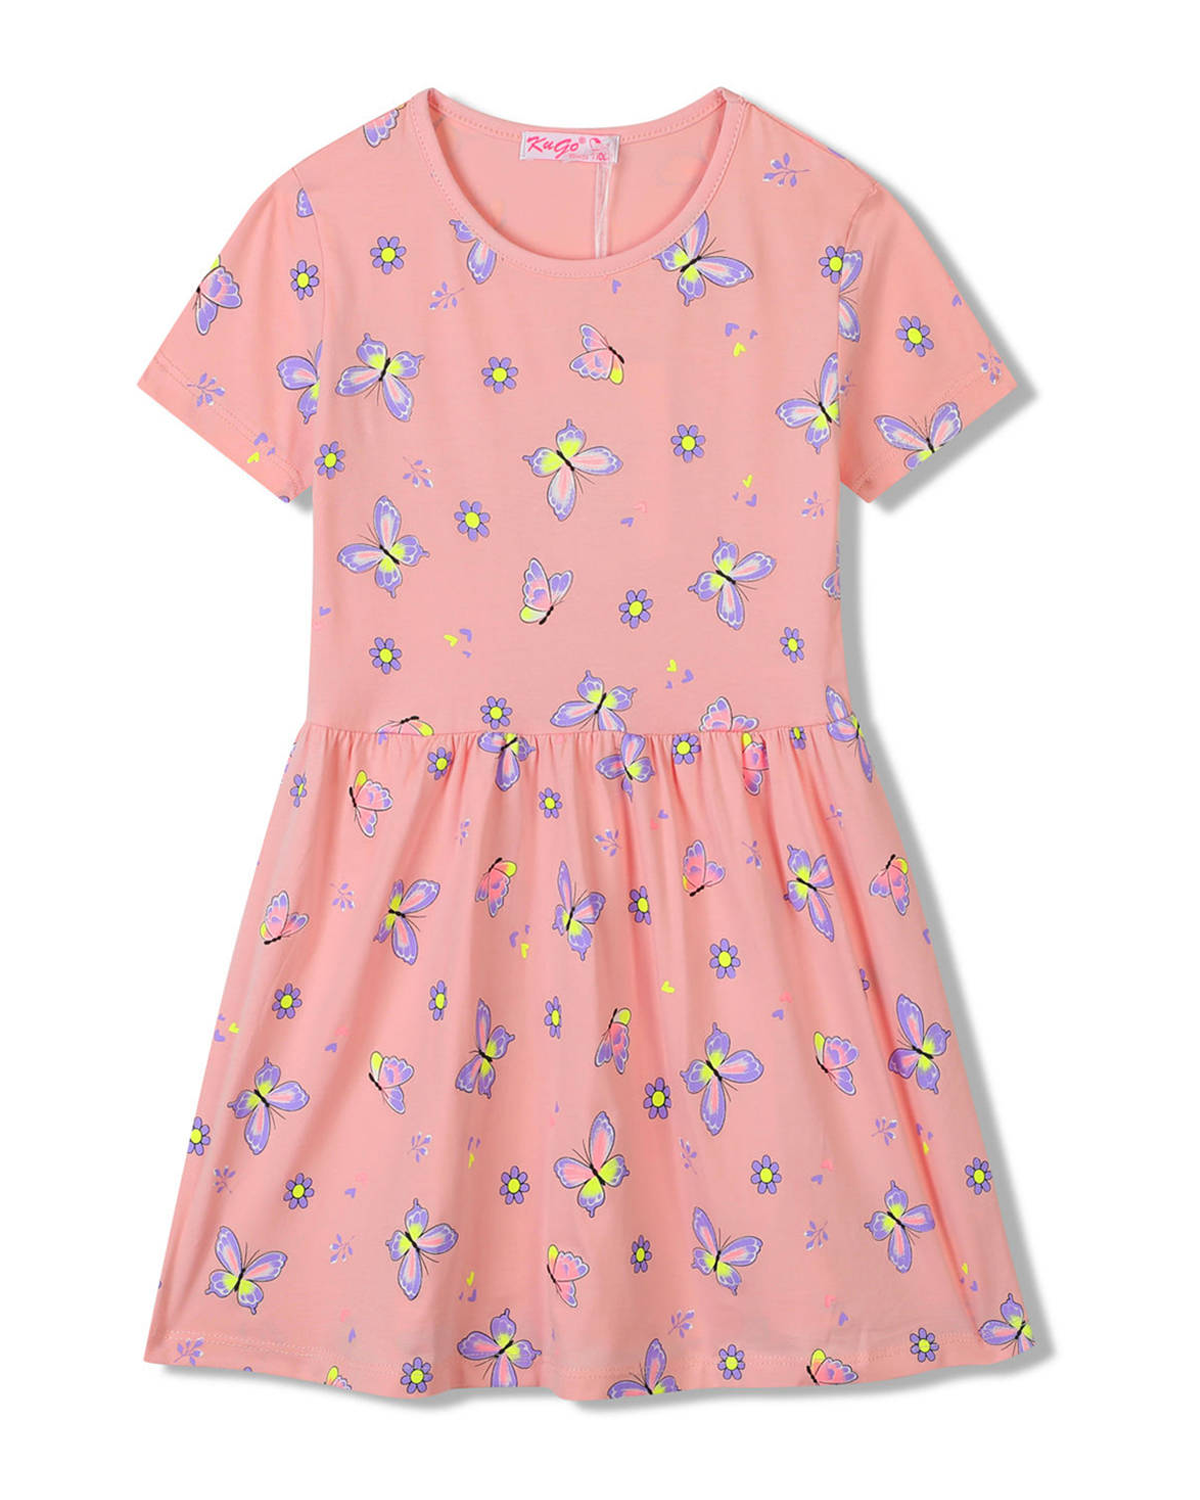 Dívčí šaty - KUGO SH3516, lososová Barva: Lososová, Velikost: 116